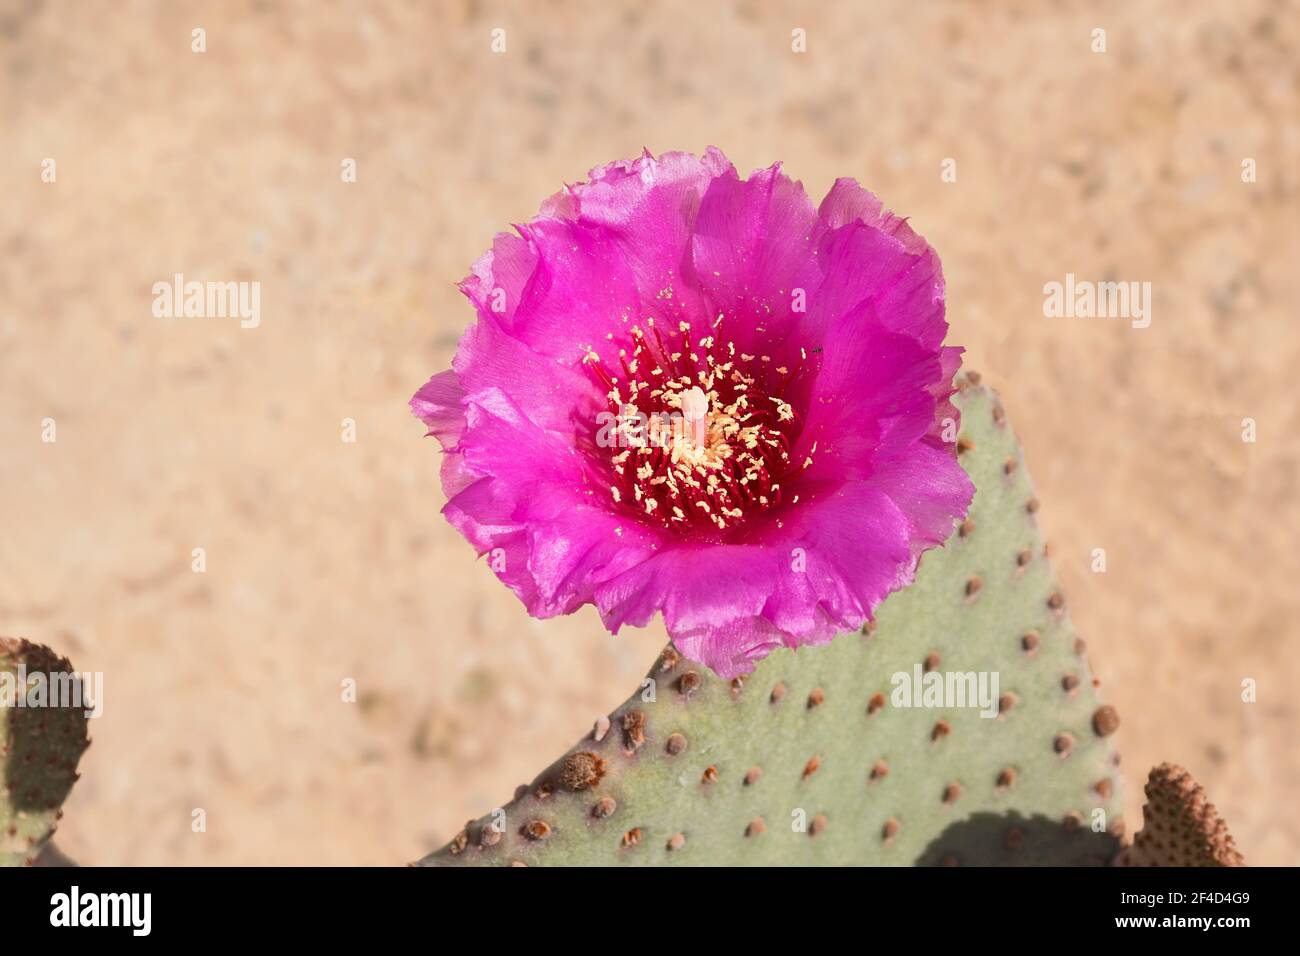 gros plan d'un cactus de queue de castor rose chaud parfait fleur et un petit insecte avec sable et plante broutés segments en arrière-plan Banque D'Images